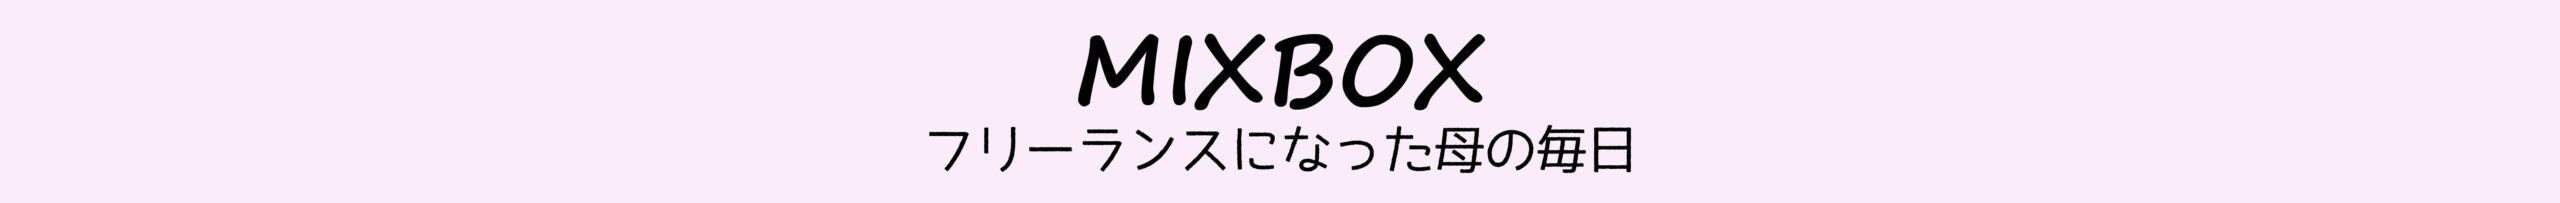 MIXBOX